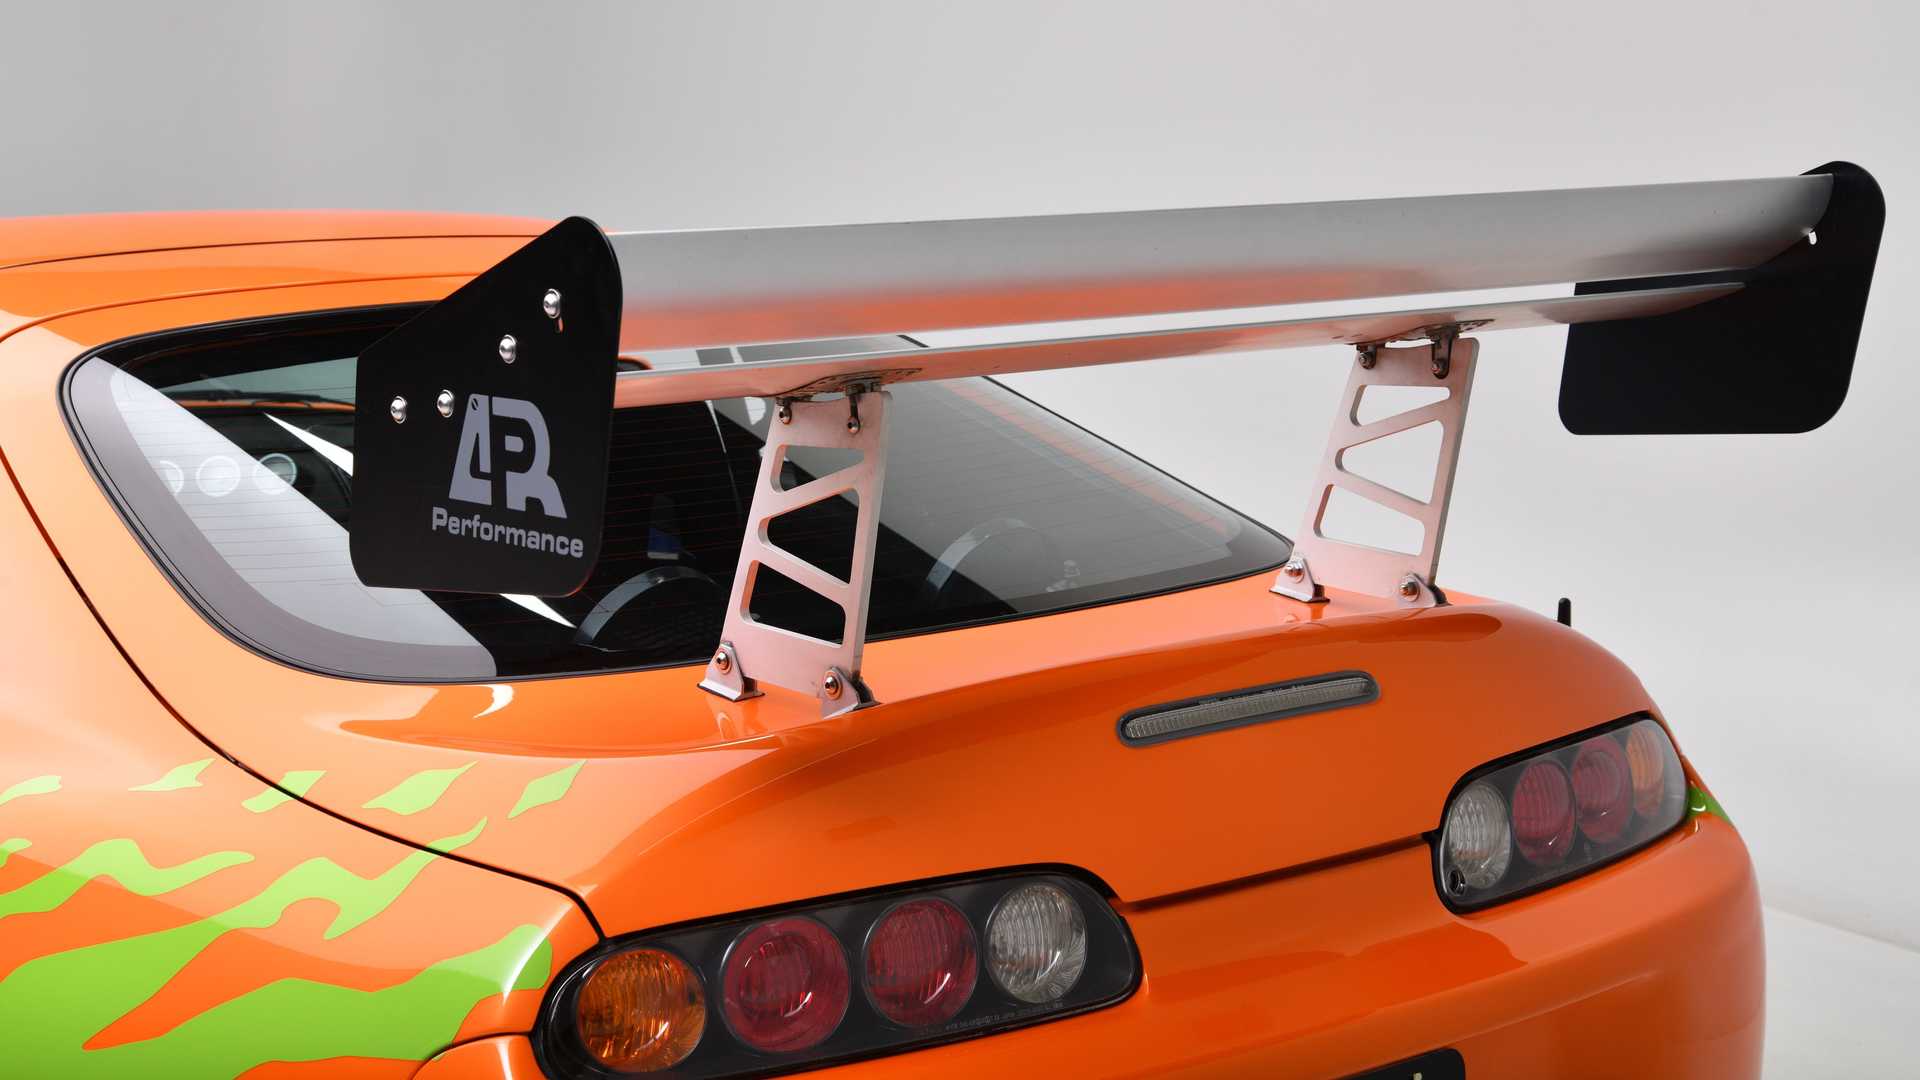 بال عقب تویوتا سوپرا فیلم سریع و خشن / Fast & Furious Toyota Supra نارنجی رنگ